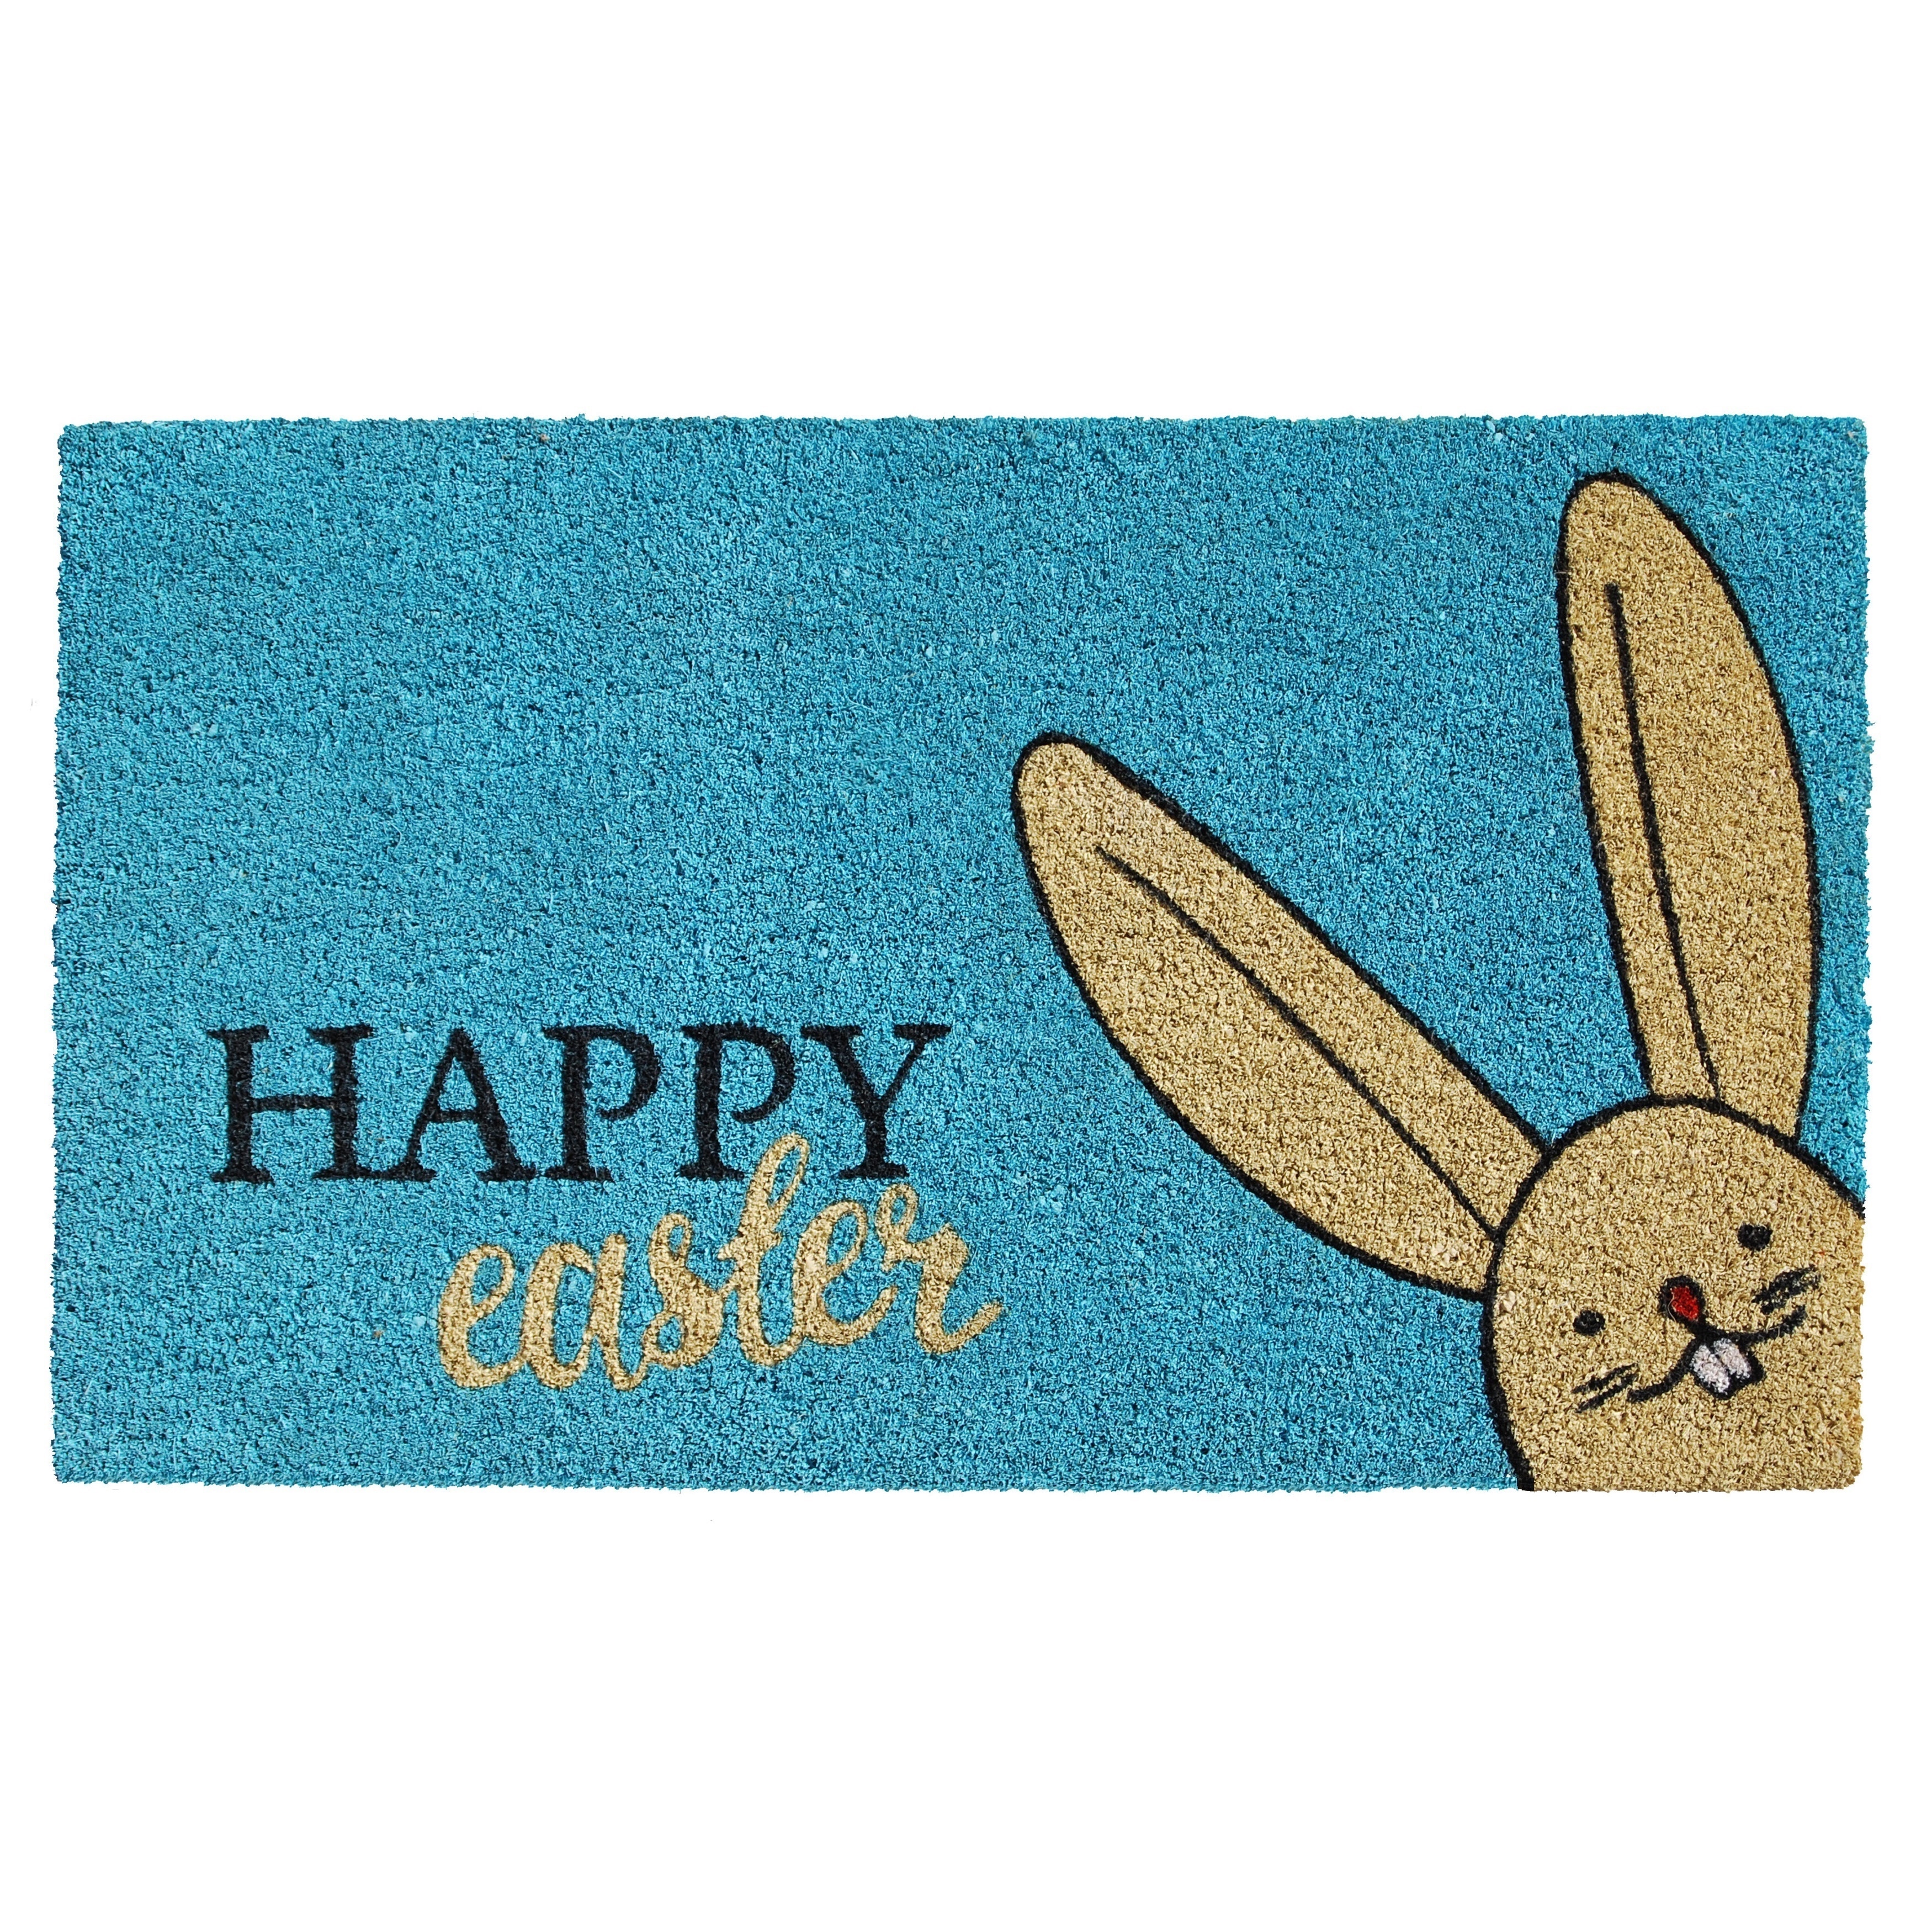 Calloway Mills Happy Easter Outdoor Doormat - image 2 of 2